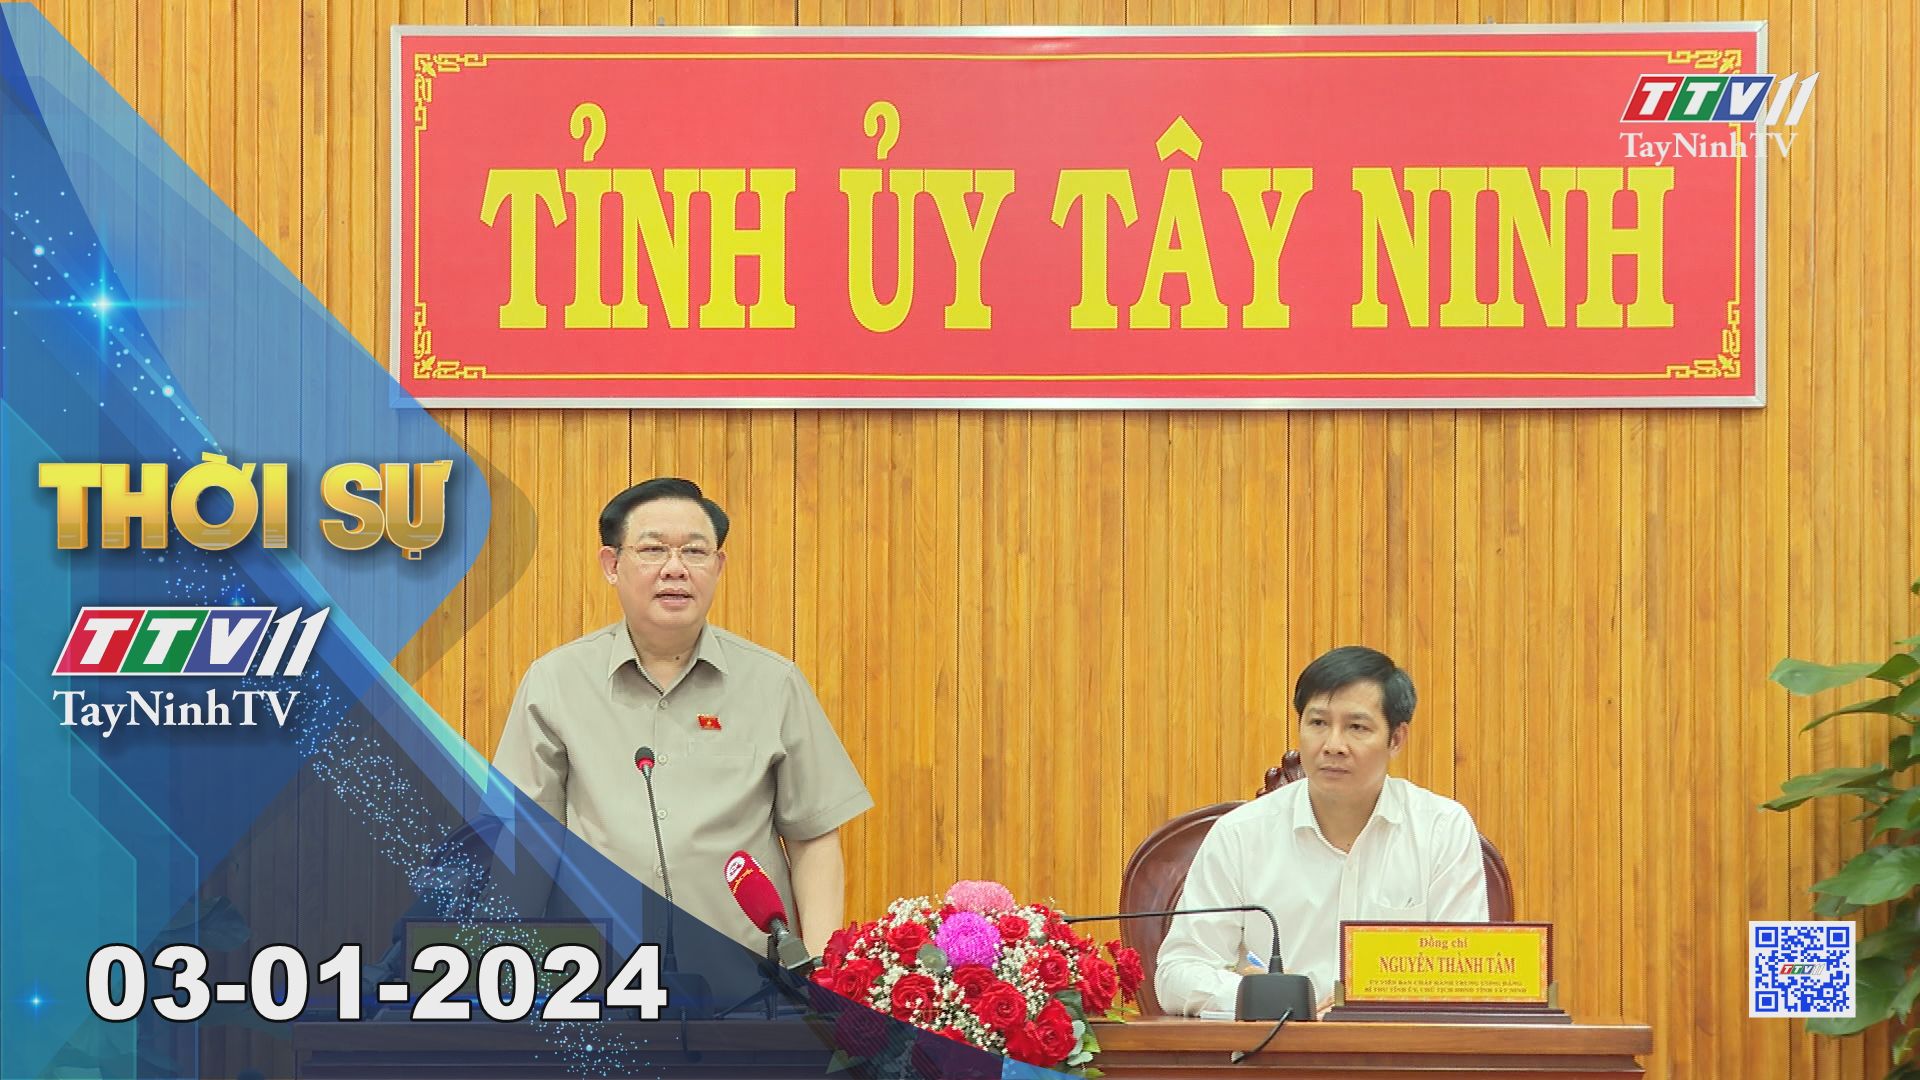 Thời sự Tây Ninh 03-01-2024 | Tin tức hôm nay | TayNinhTV